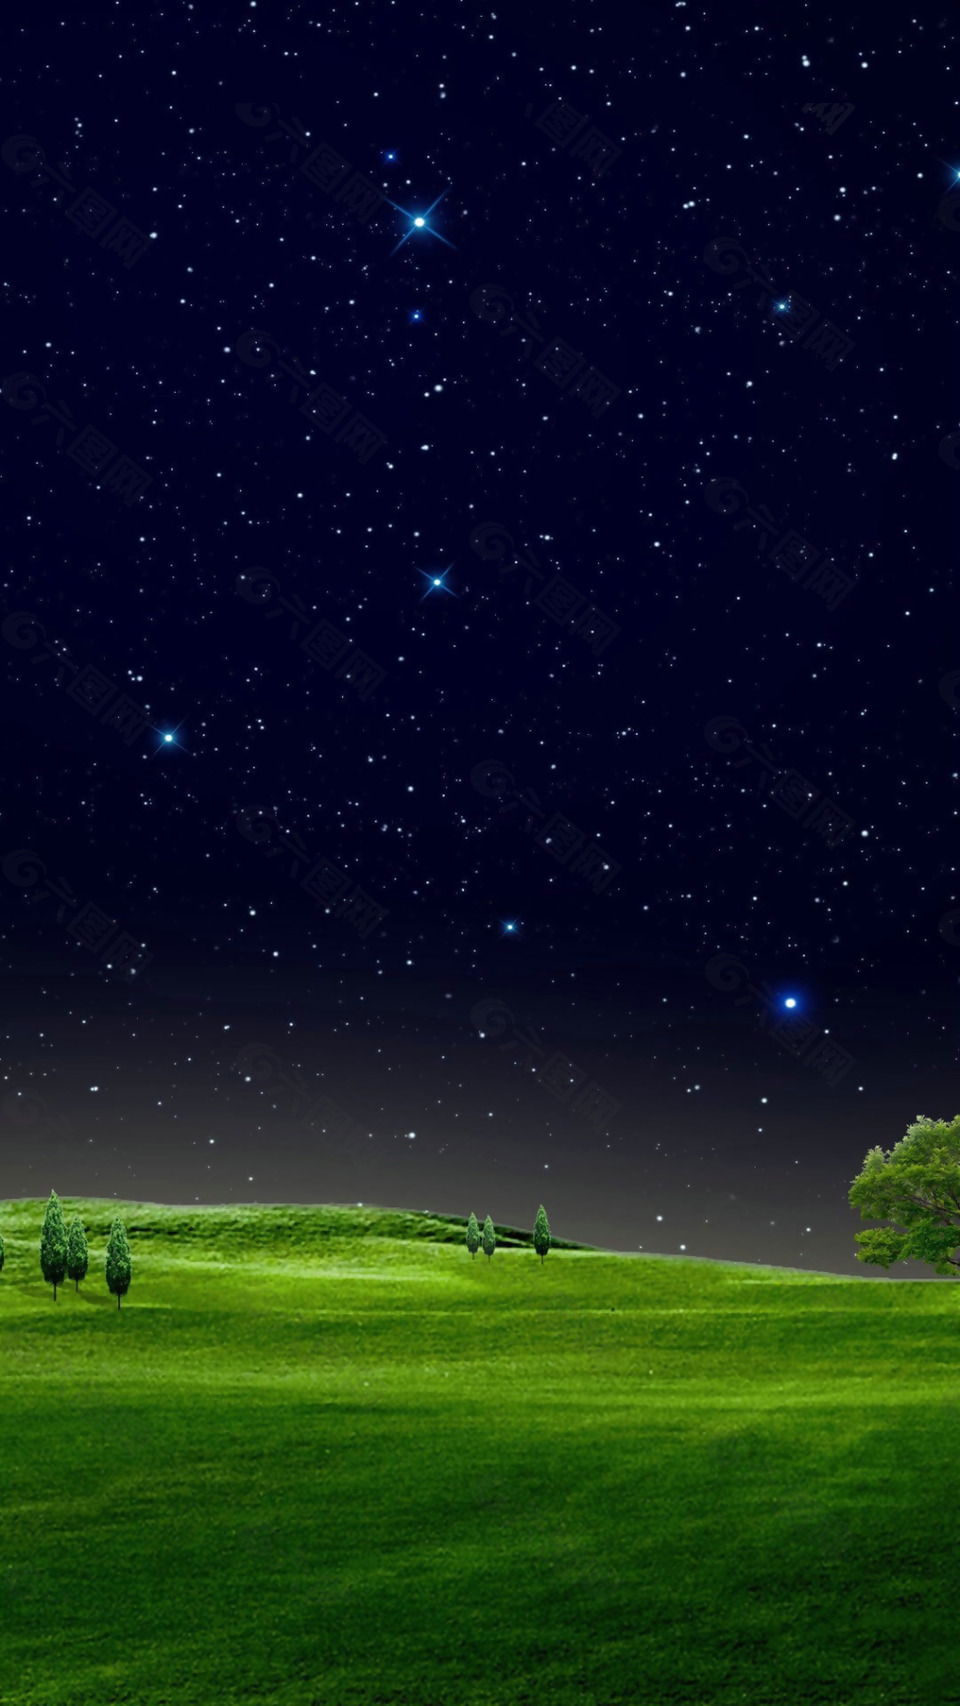 夜空绿色草地H5背景素材